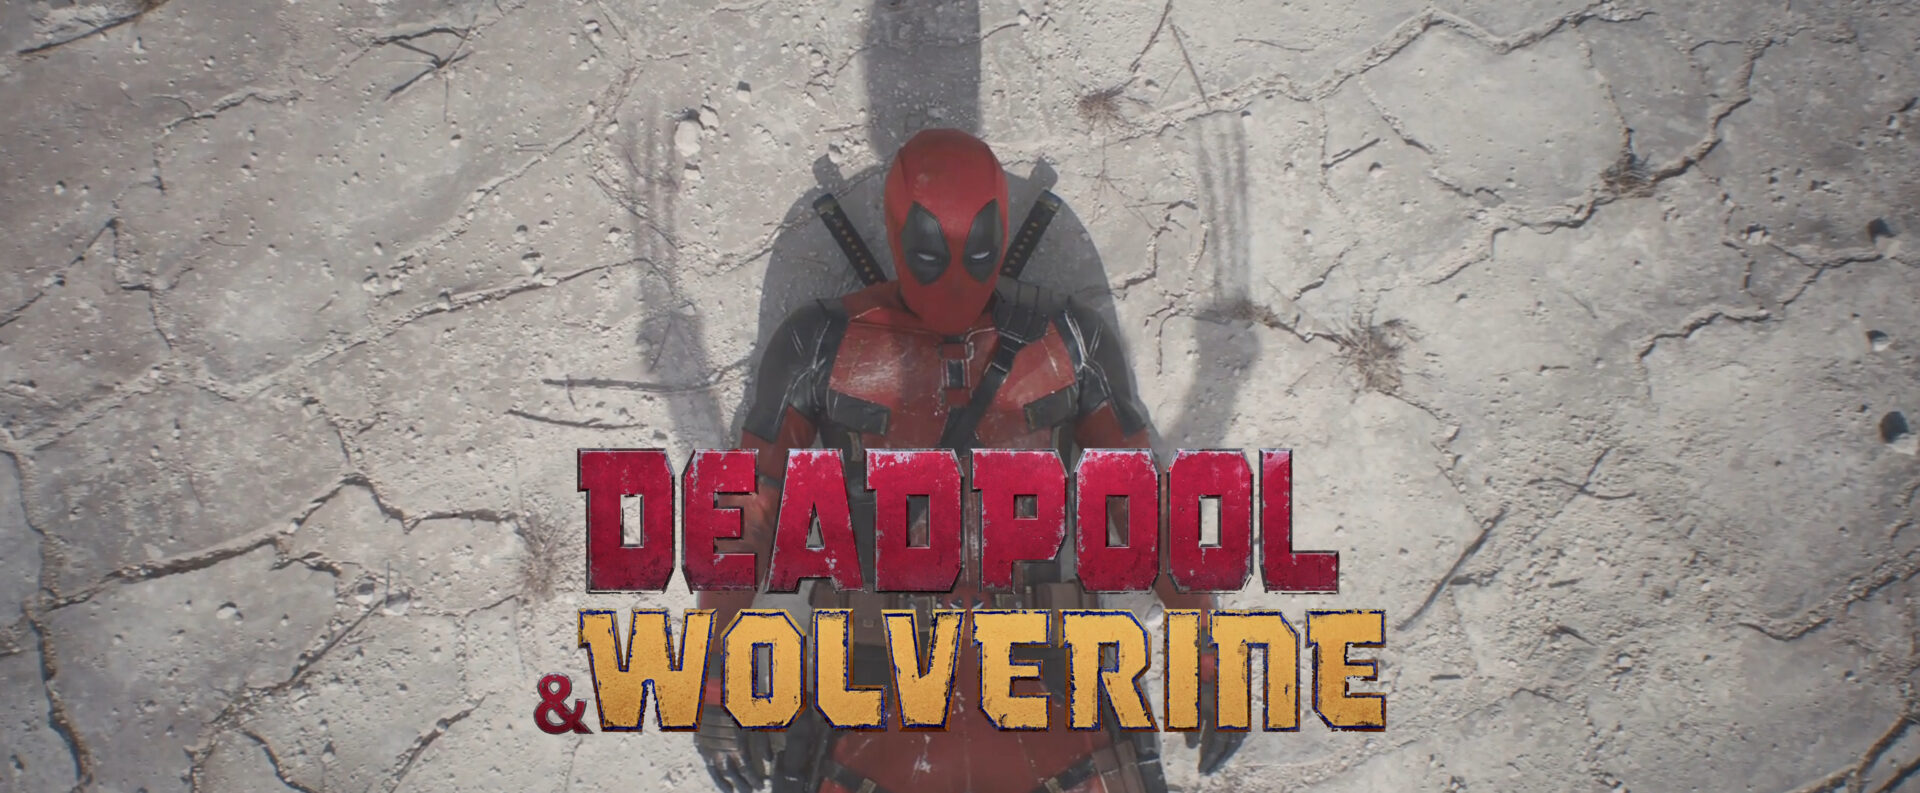 deadpool-wolverine-teaser-trailer-banner